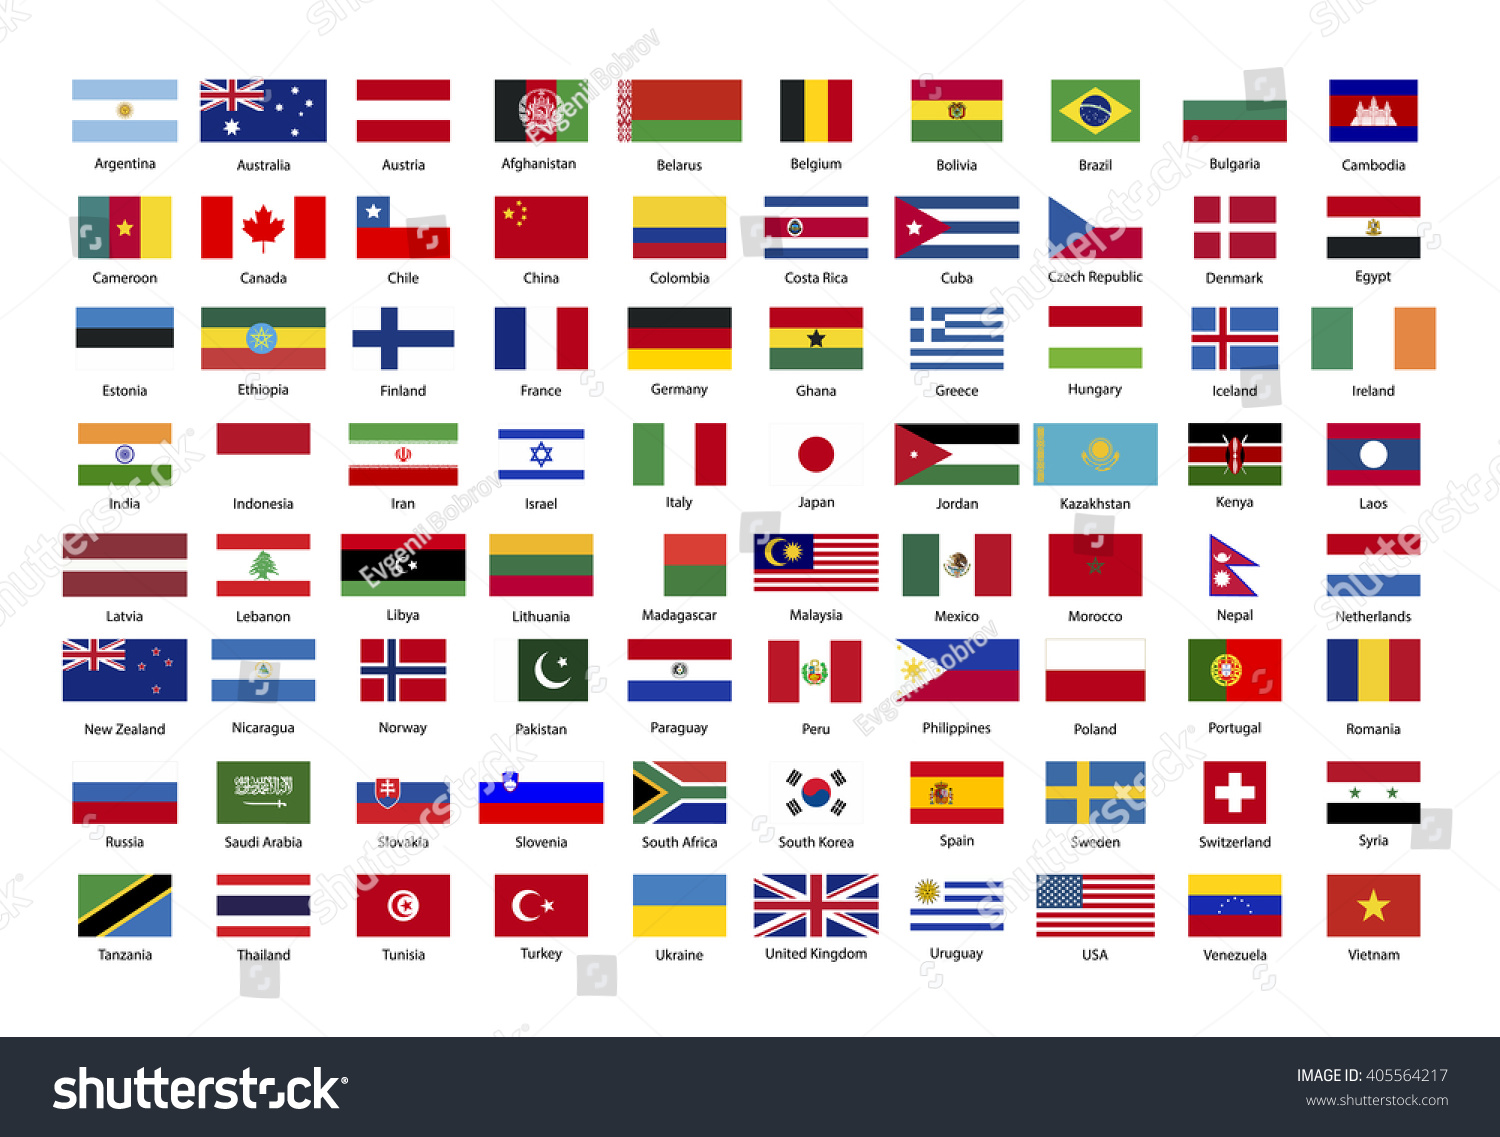 Все страны мира и их флаги и названия на русском языке